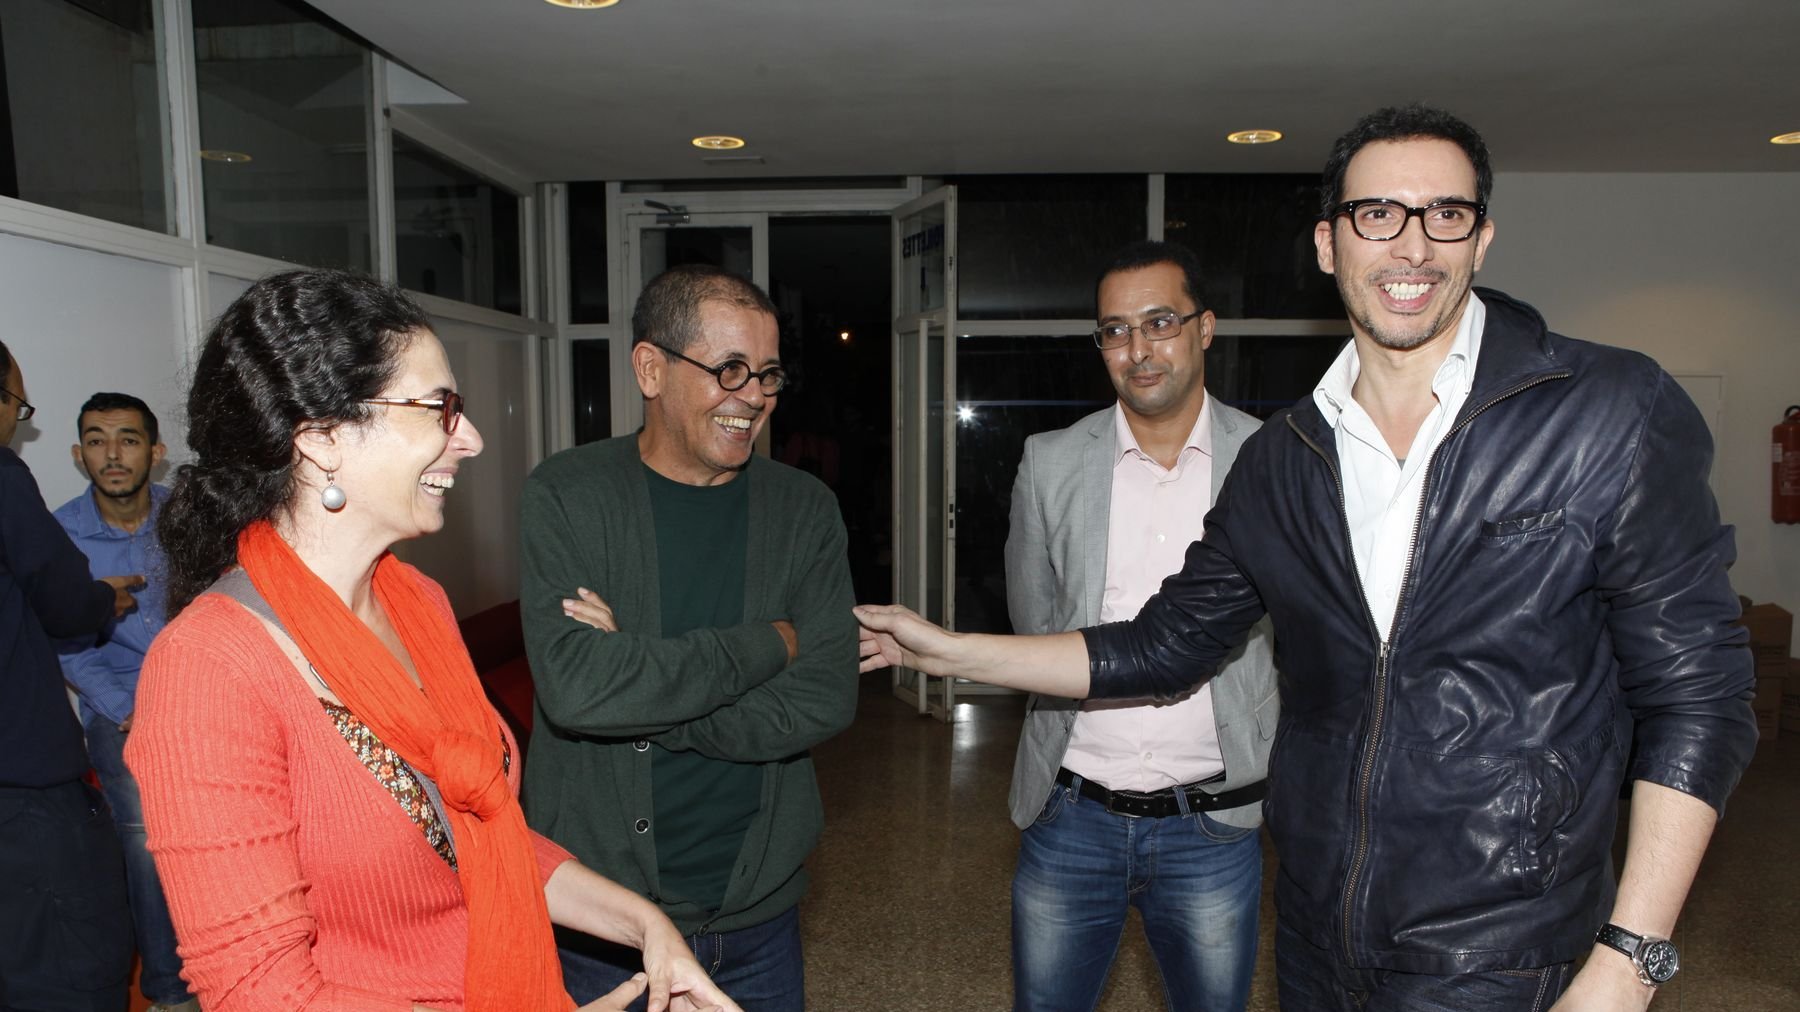 L'amitié et la bonne humeur étaient au rendez-vous lors de cette belle soirée de partage. Et les rires de Mounir Fatmi et de l'écrivain Moulim Laroussi sont contagieux !
